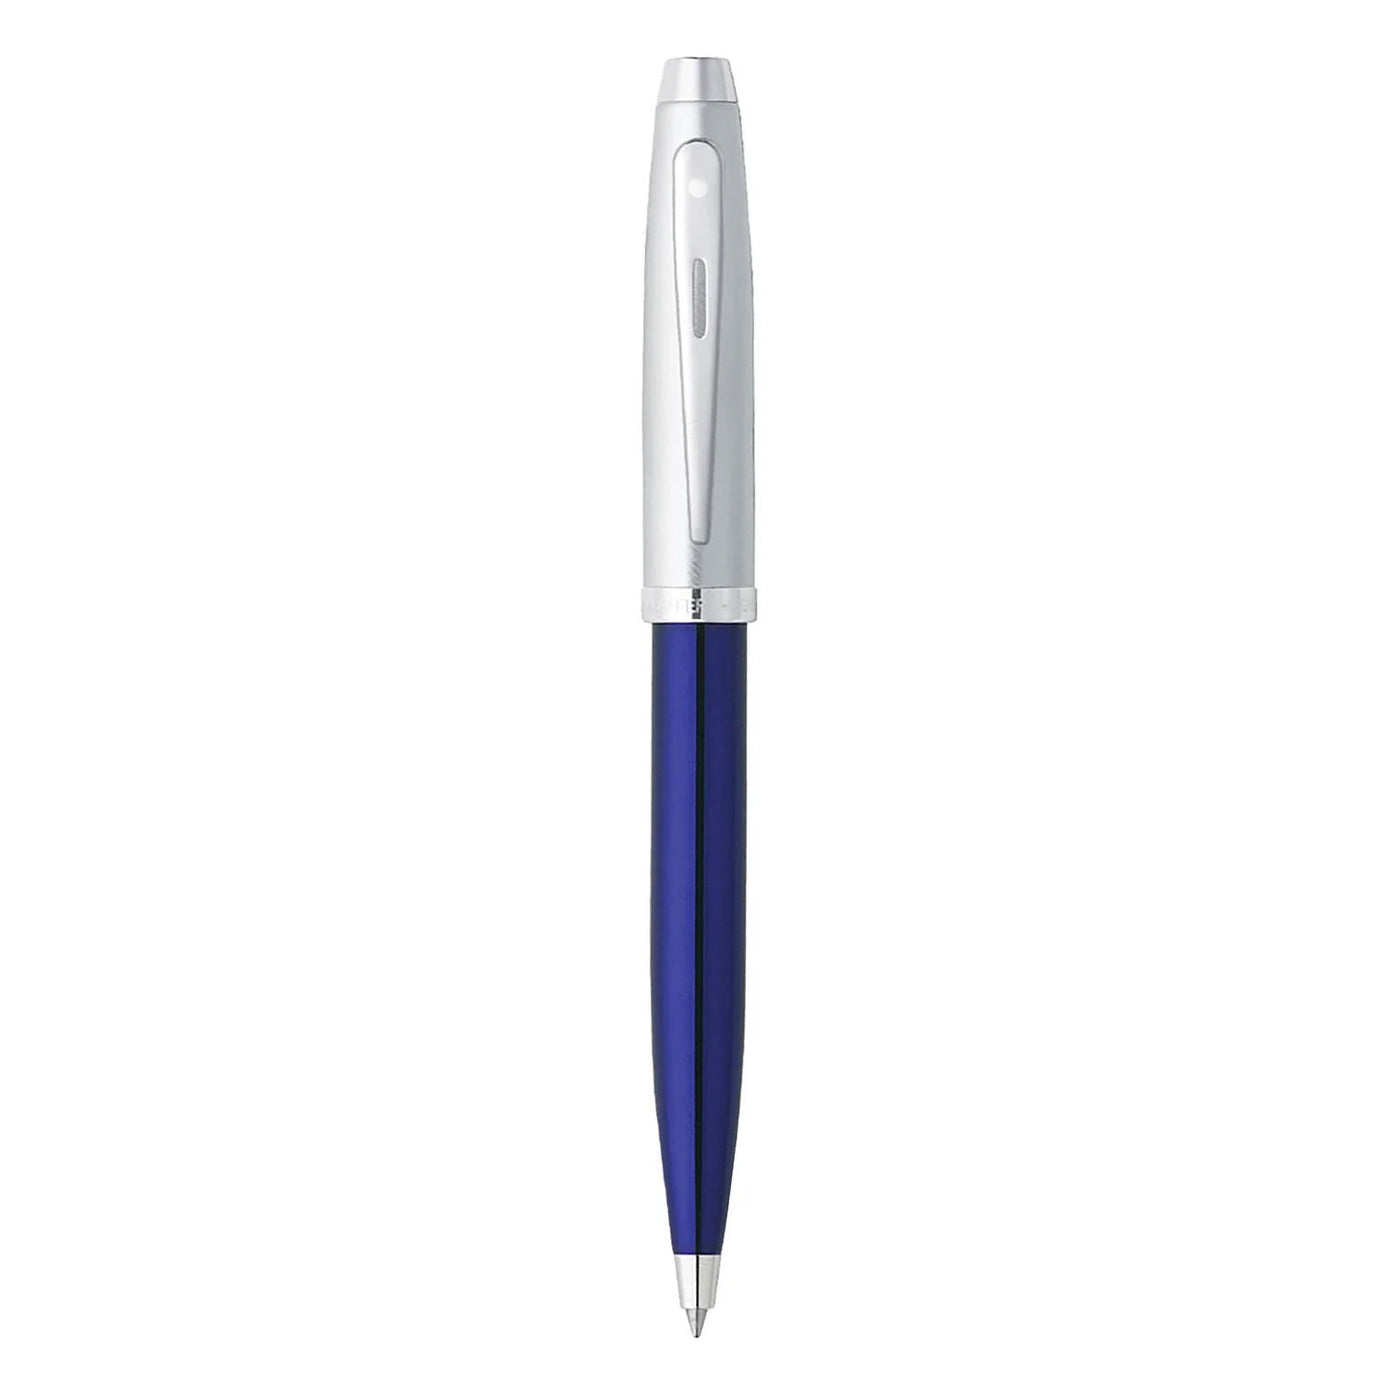 Sheaffer 100 Ball Pen - Blue & Brushed Chrome 2